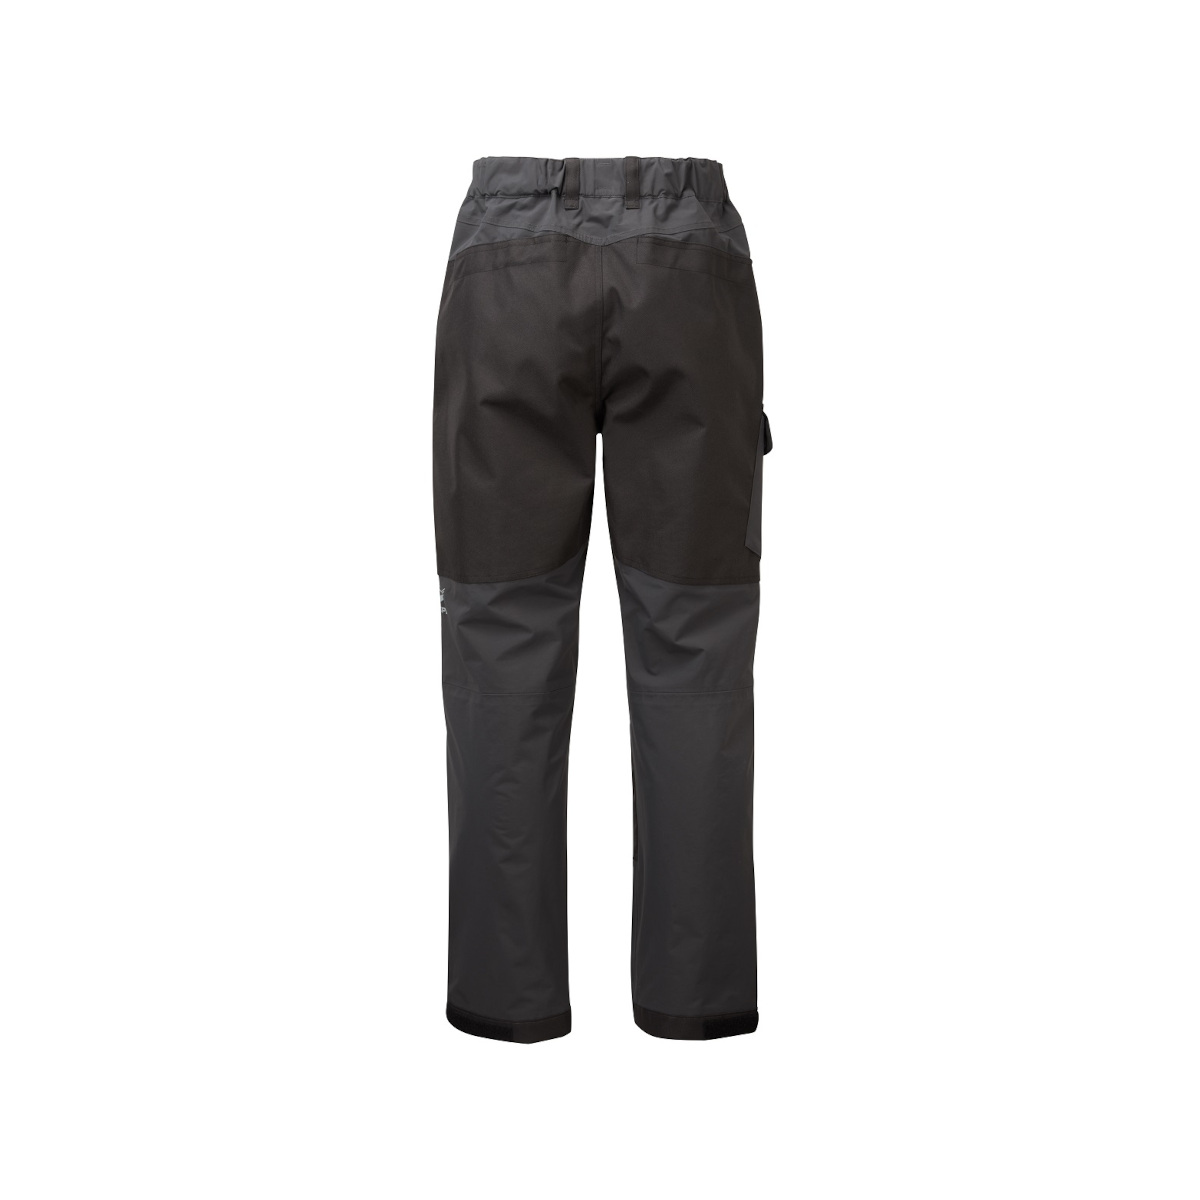 Gill OS32 Coastal pantalon de quart, homme - graphite, taille M